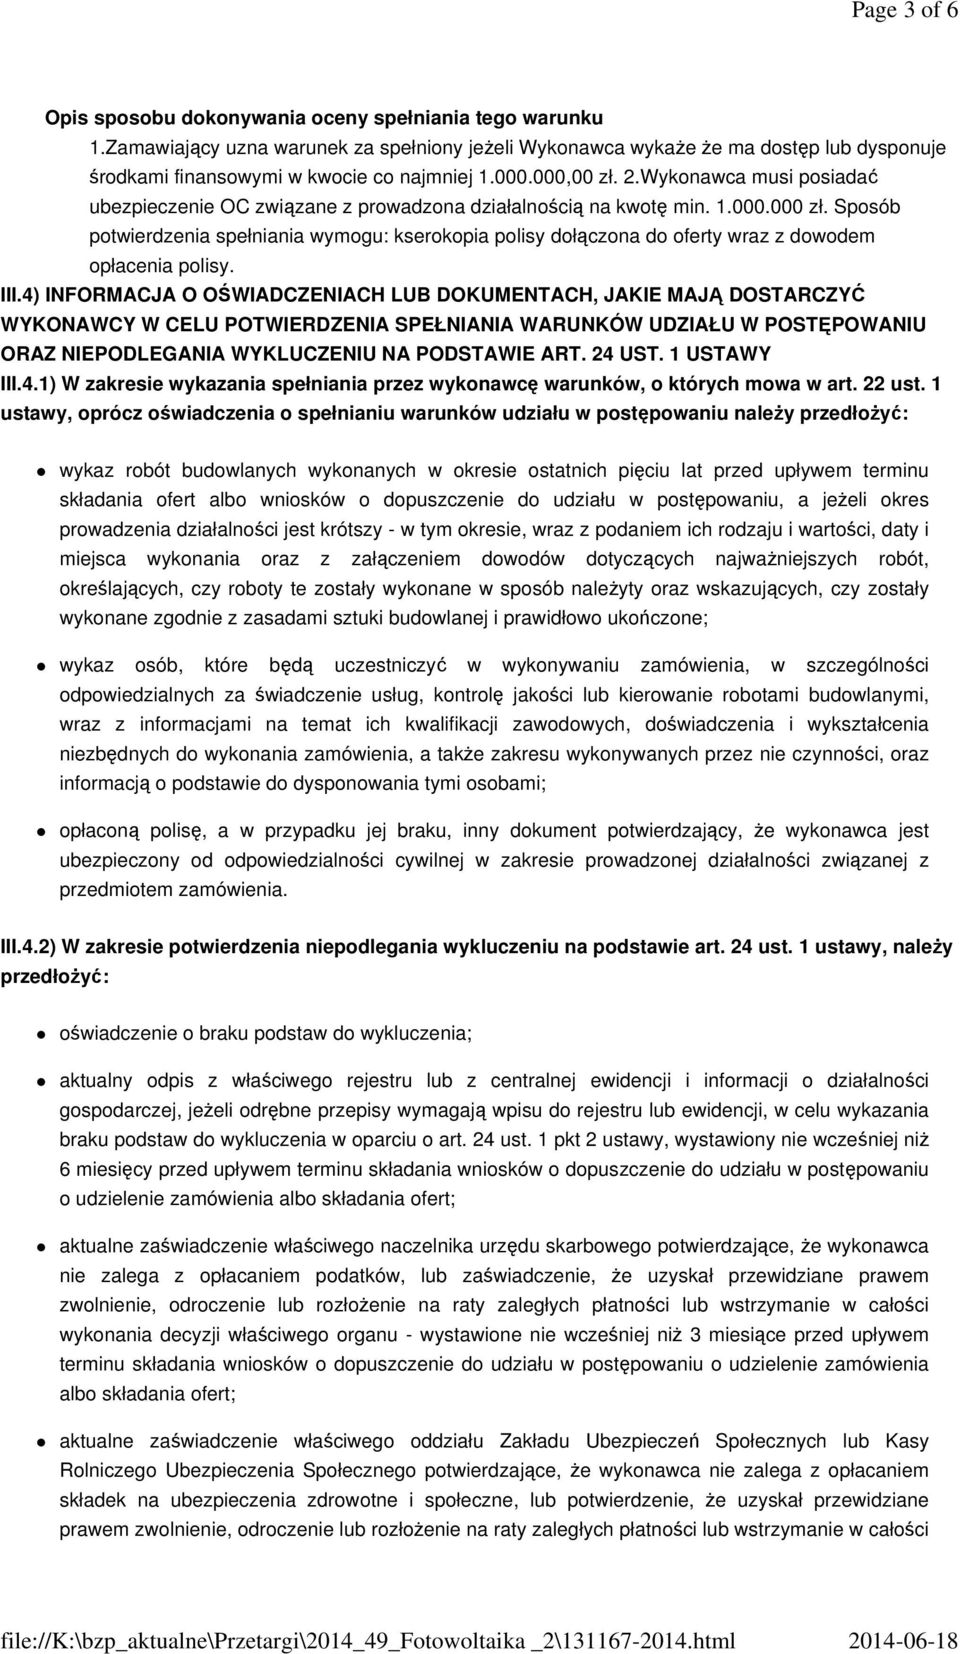 Wykonawca musi posiadać ubezpieczenie OC związane z prowadzona działalnością na kwotę min. 1.000.000 zł.